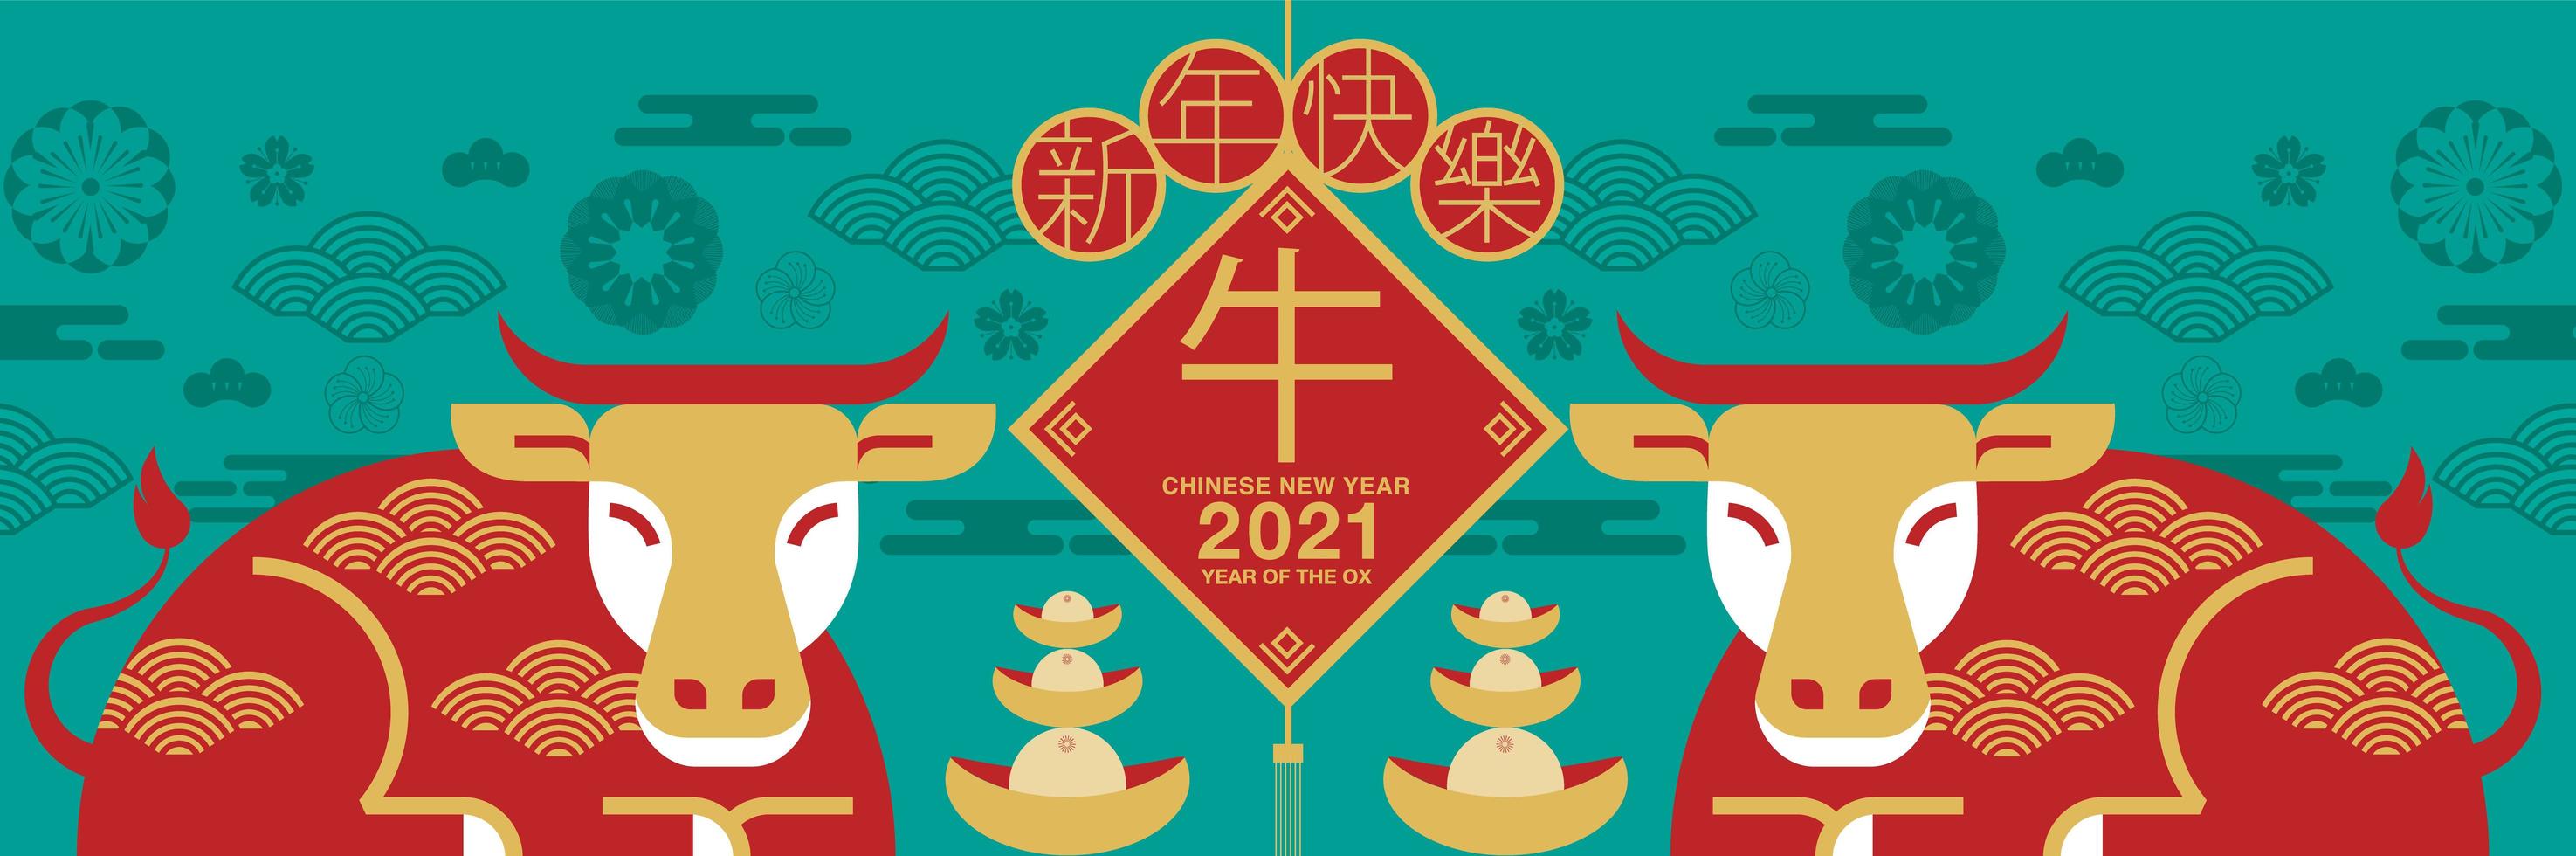 Chinees Nieuwjaar 2021 os banner vector